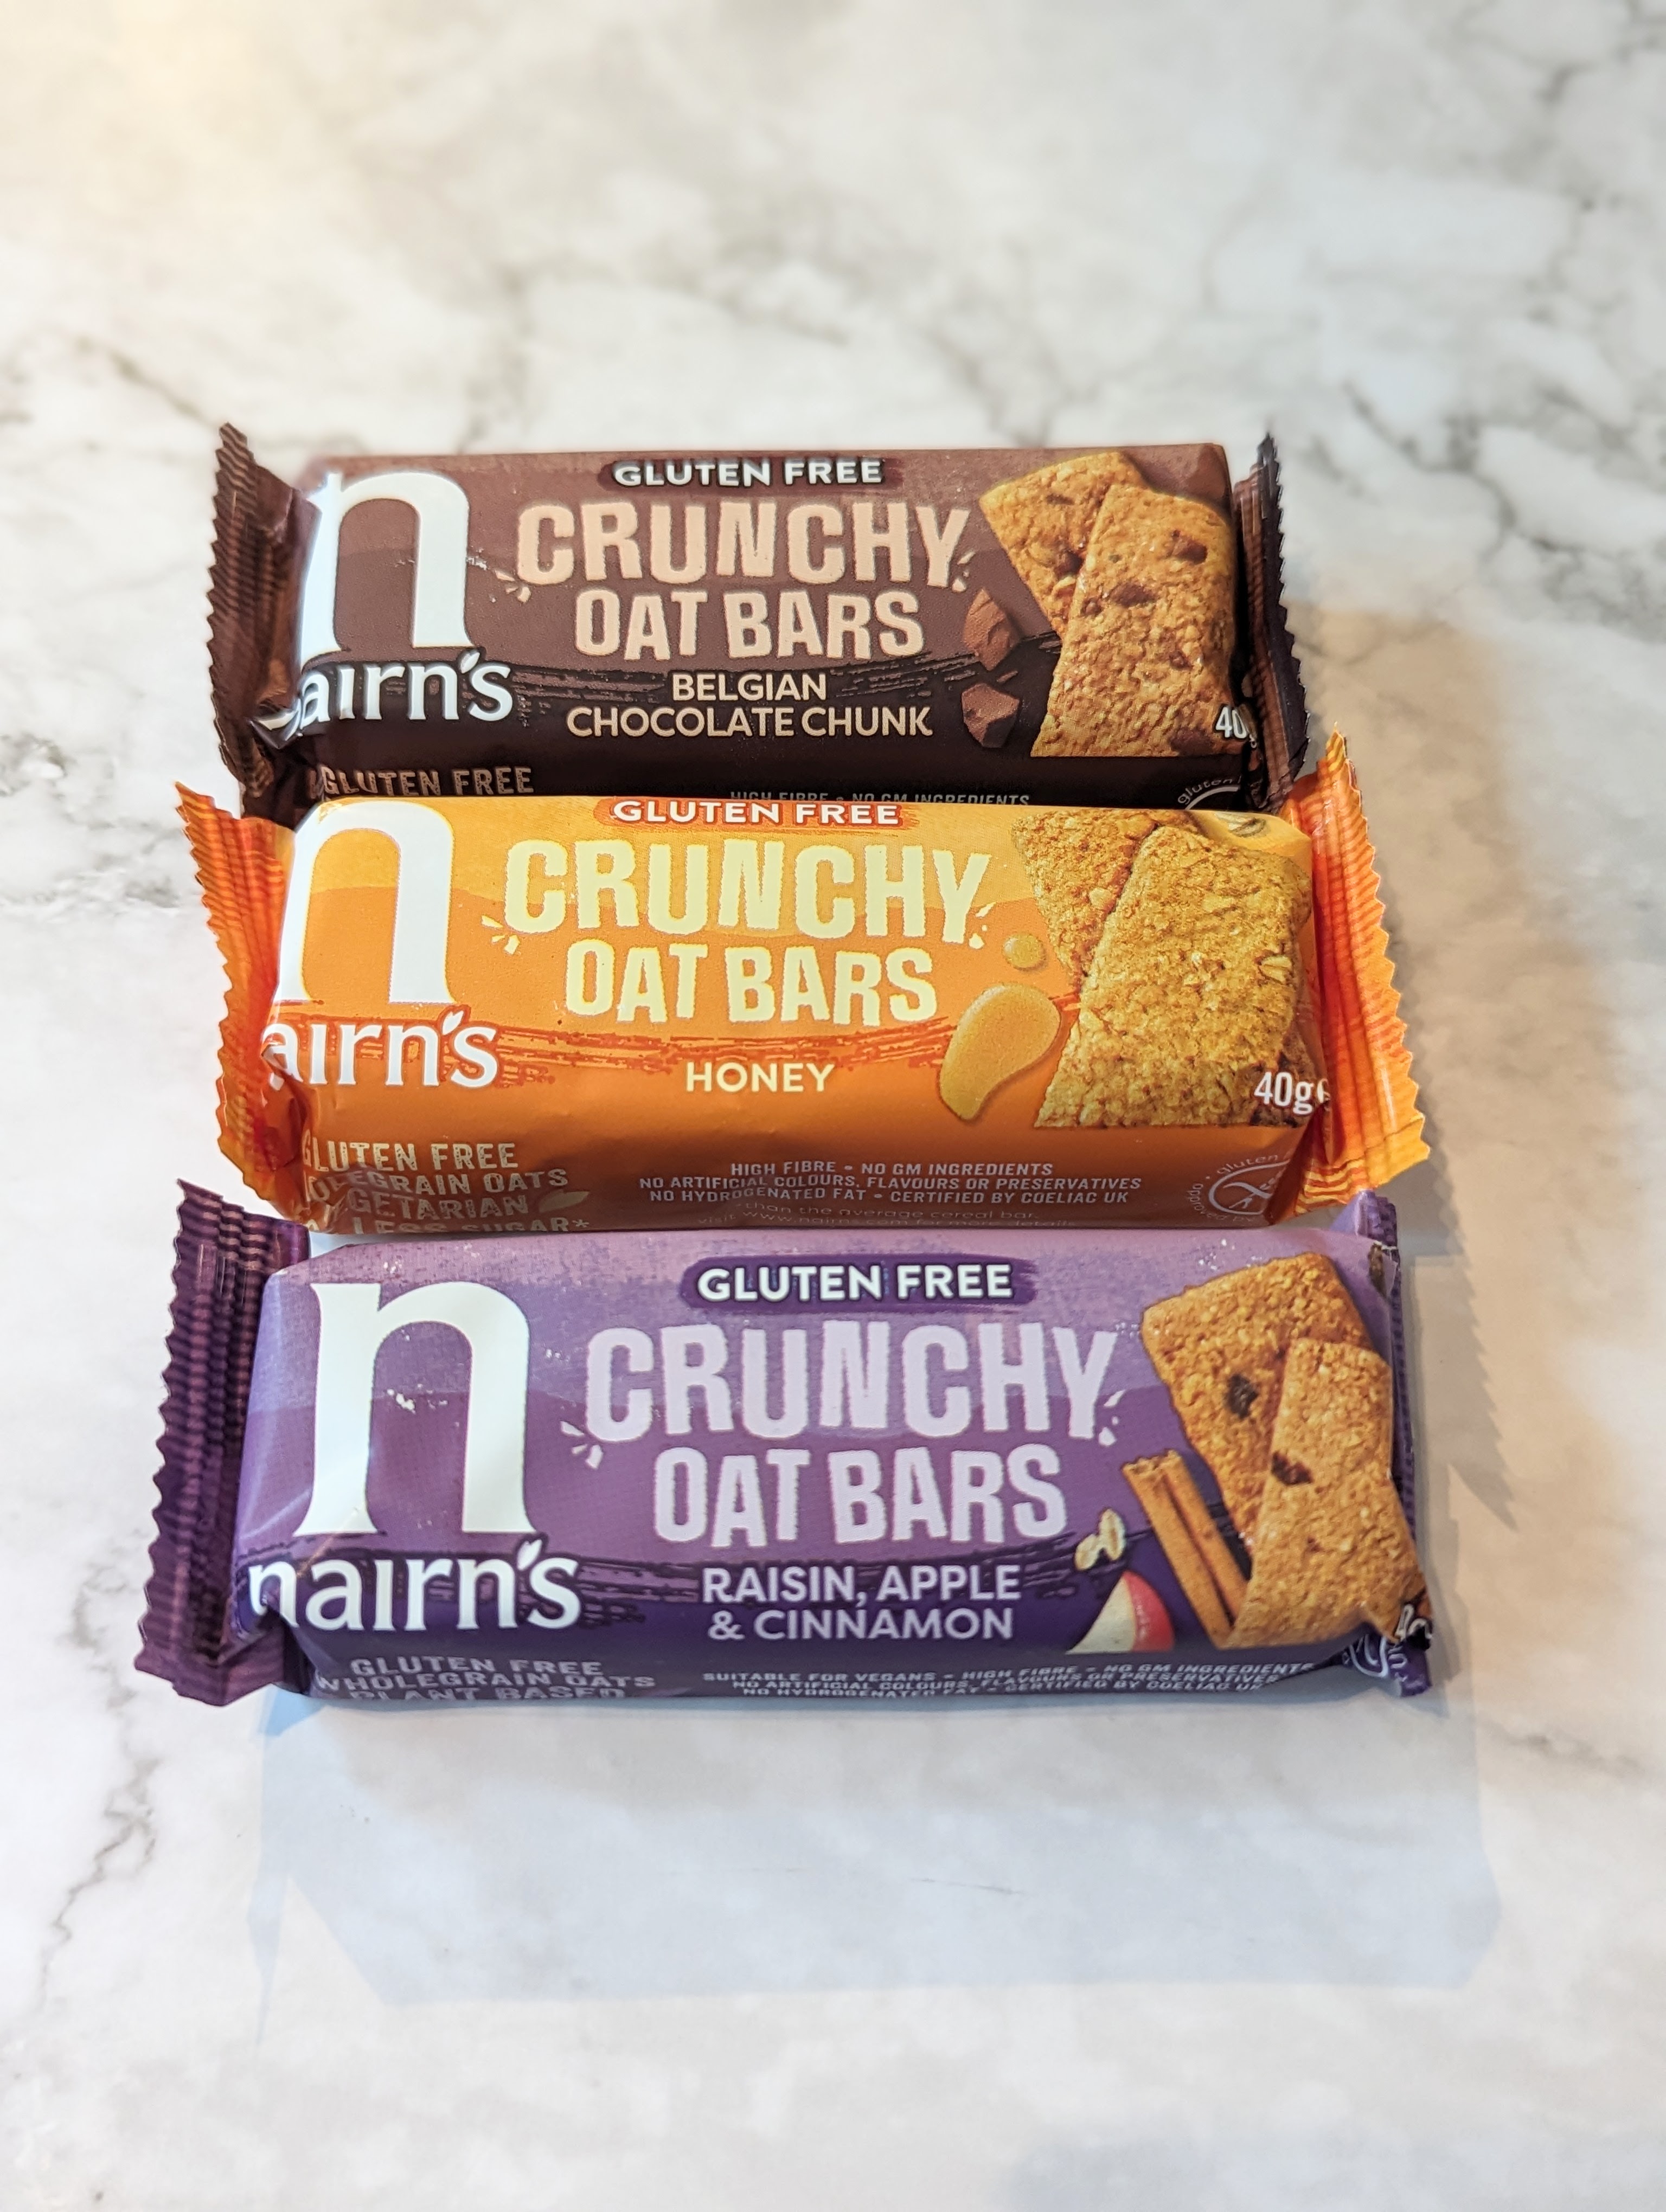 Nairn's Crunch Oat bars